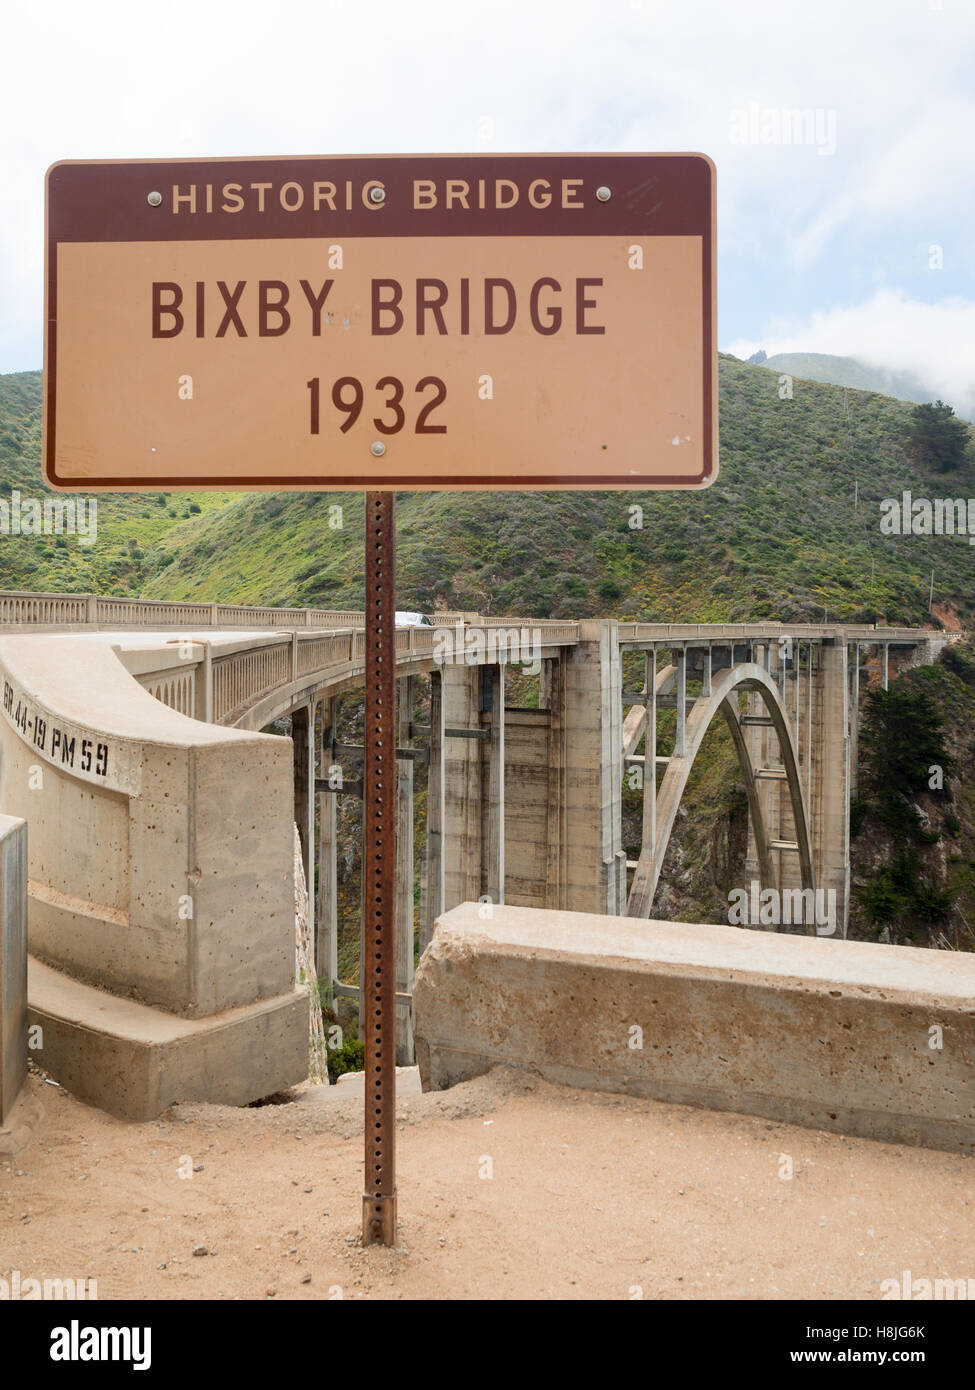 Bixby Puente firmar con el puente en segundo plano. Foto de stock